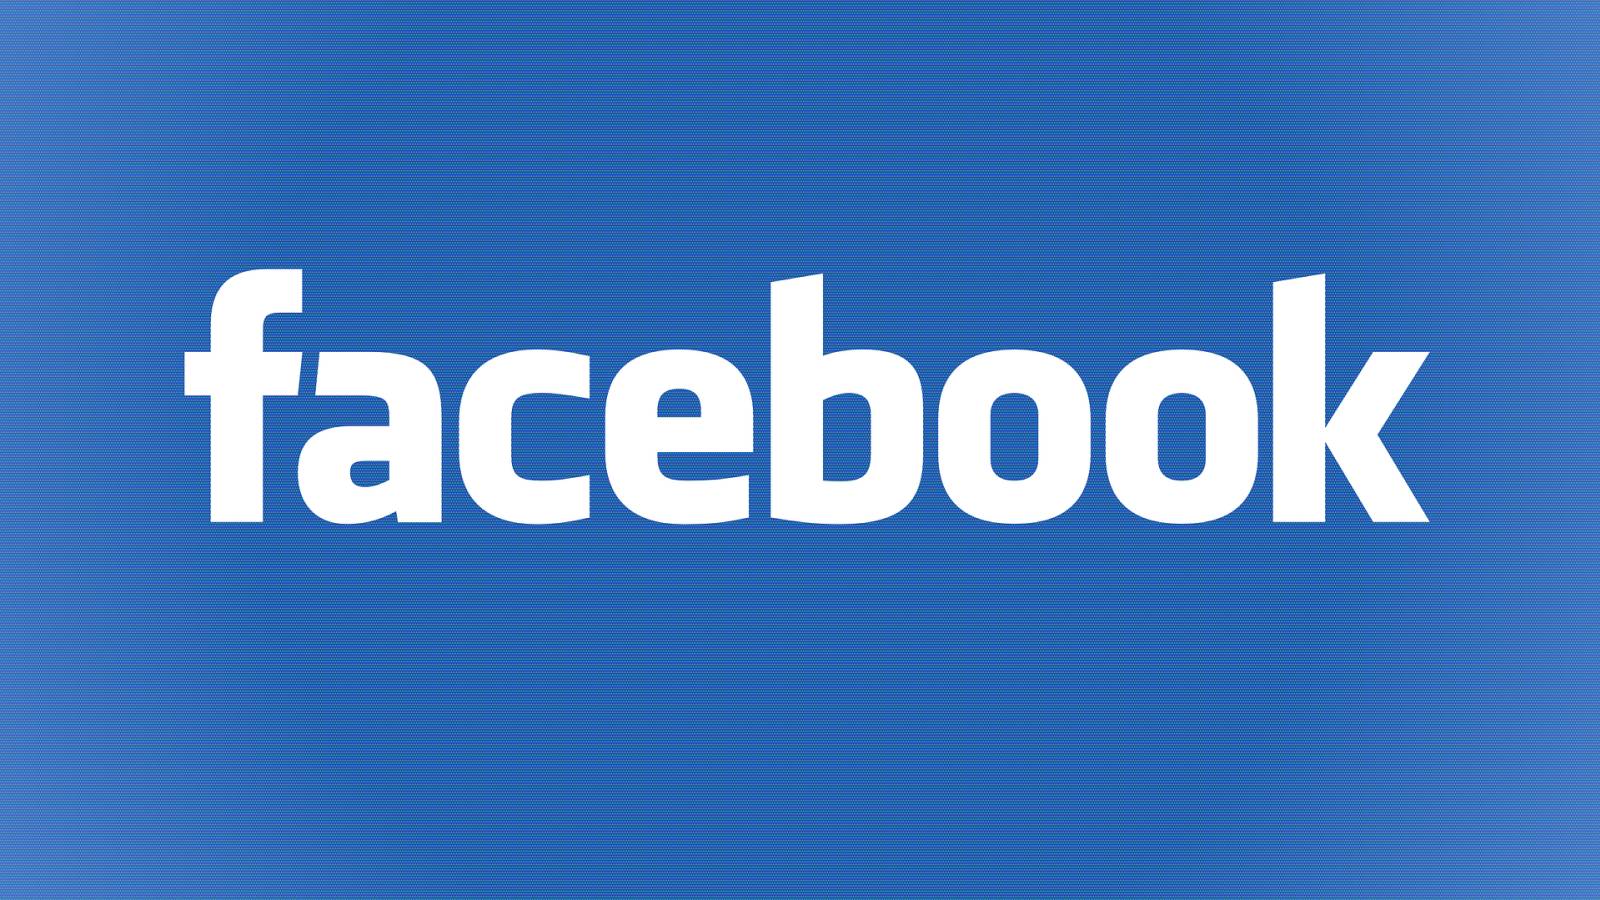 Facebook pour iPhone et Android a été mis à jour avec les nouveautés